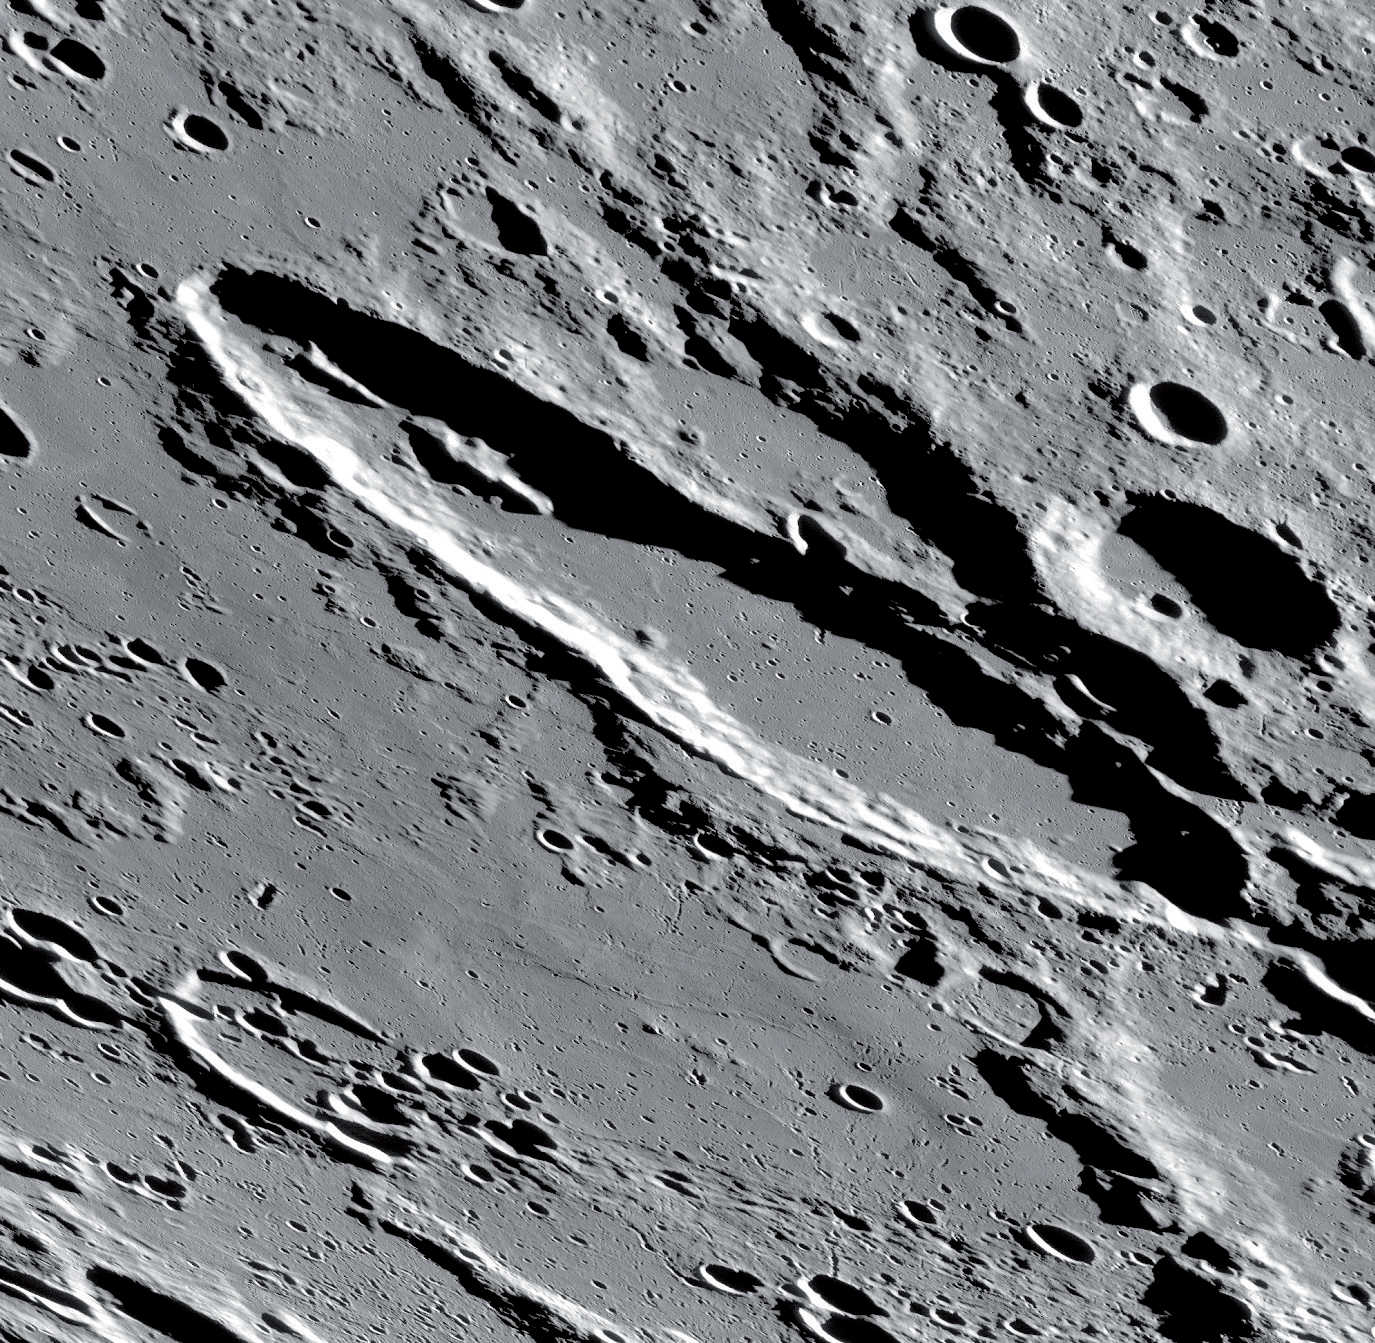 Notevole anche la catena montuosa allungata nella metà nord-occidentale del cratere. NASA/GSFC/Arizona State University